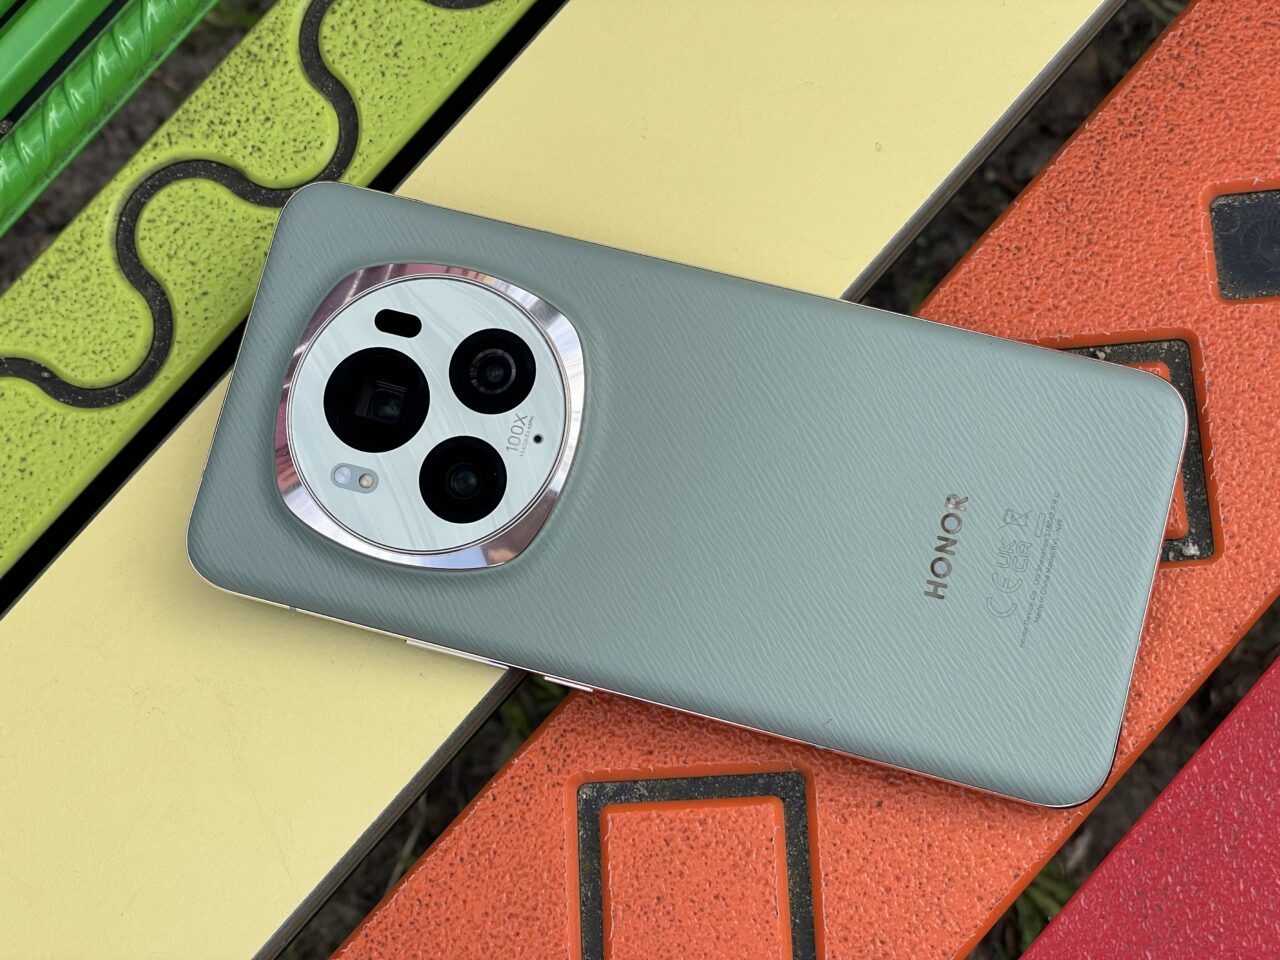 Smartfon marki Honor leżący na ławce, z tylnym aparatem fotograficznym o kształcie okręgu i napisem "100x Zoom".